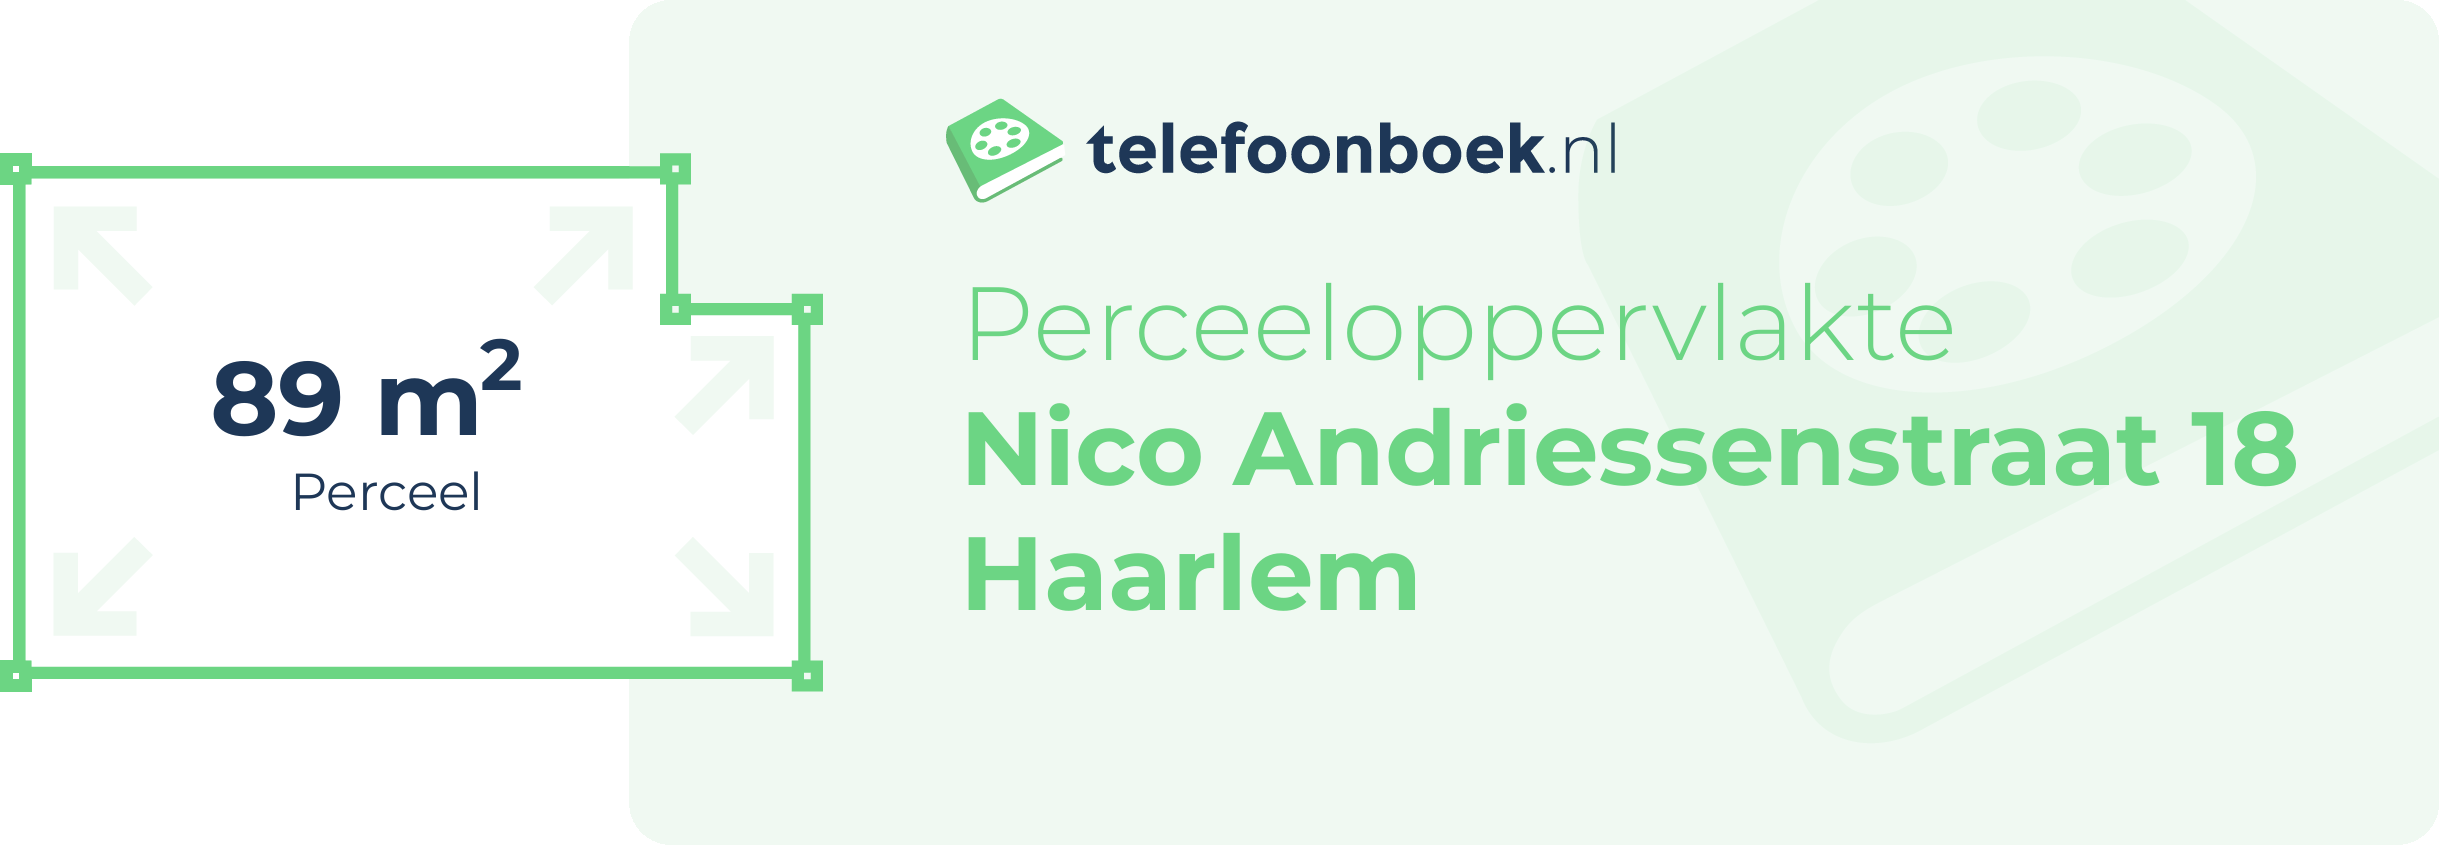 Perceeloppervlakte Nico Andriessenstraat 18 Haarlem